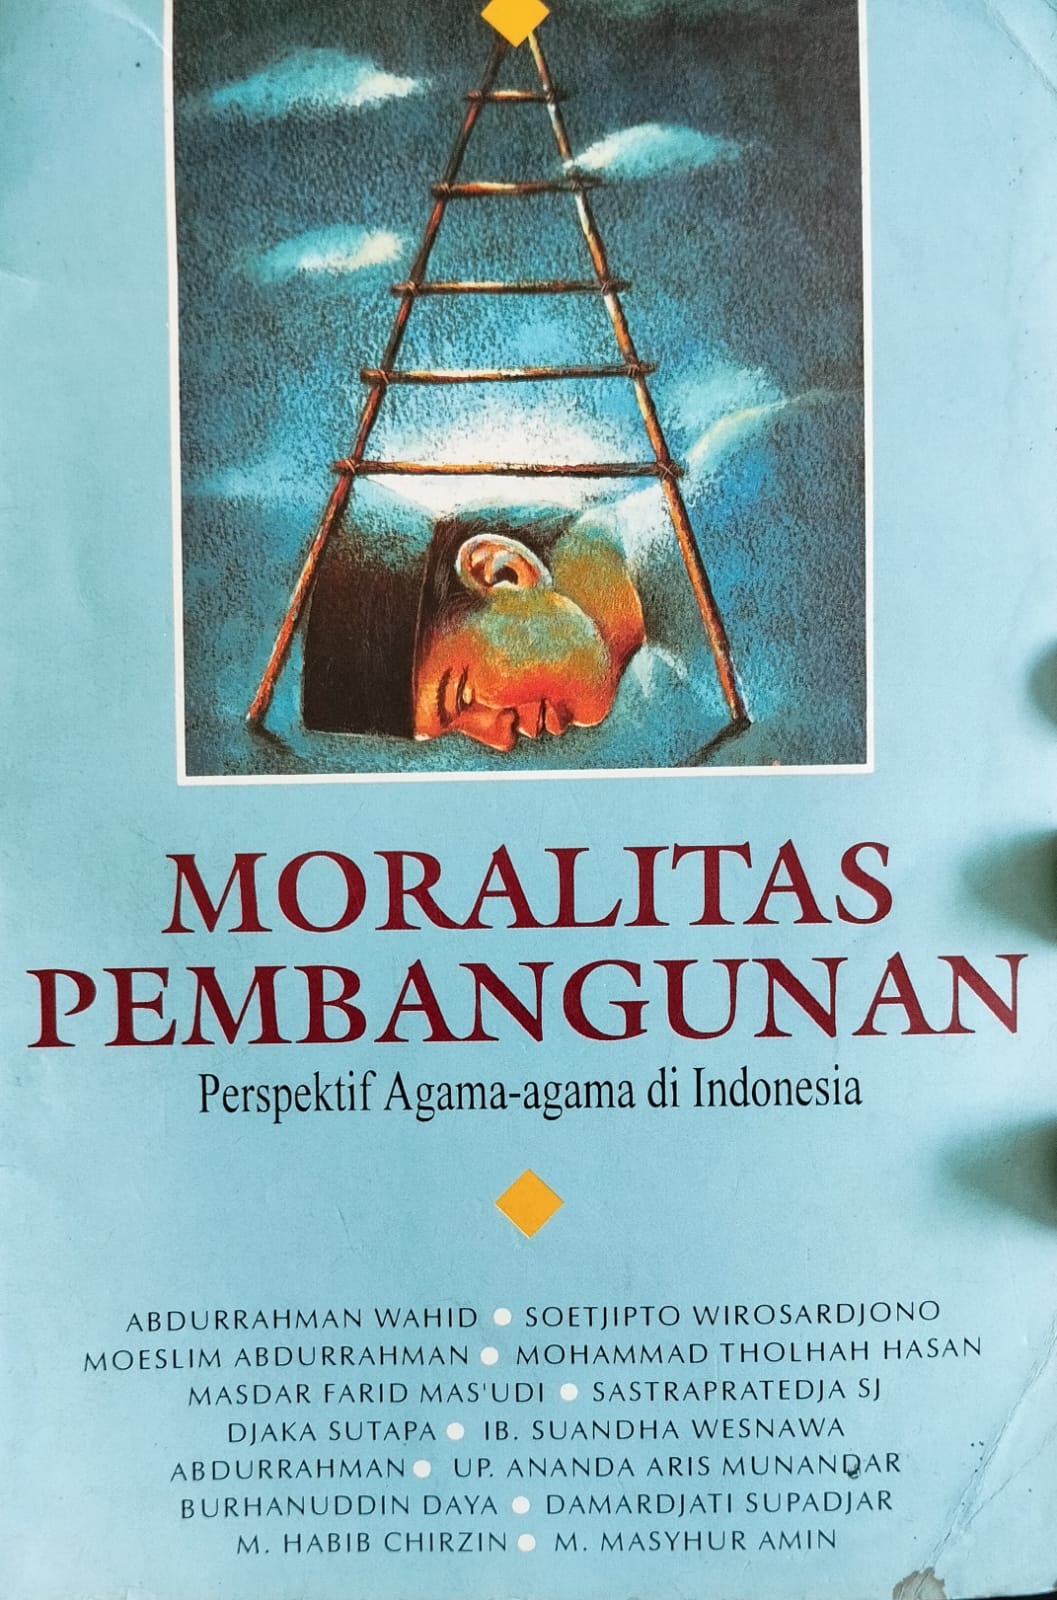 Moralitas Pembangunan: Perspektif Agama-Agama di Indonesia